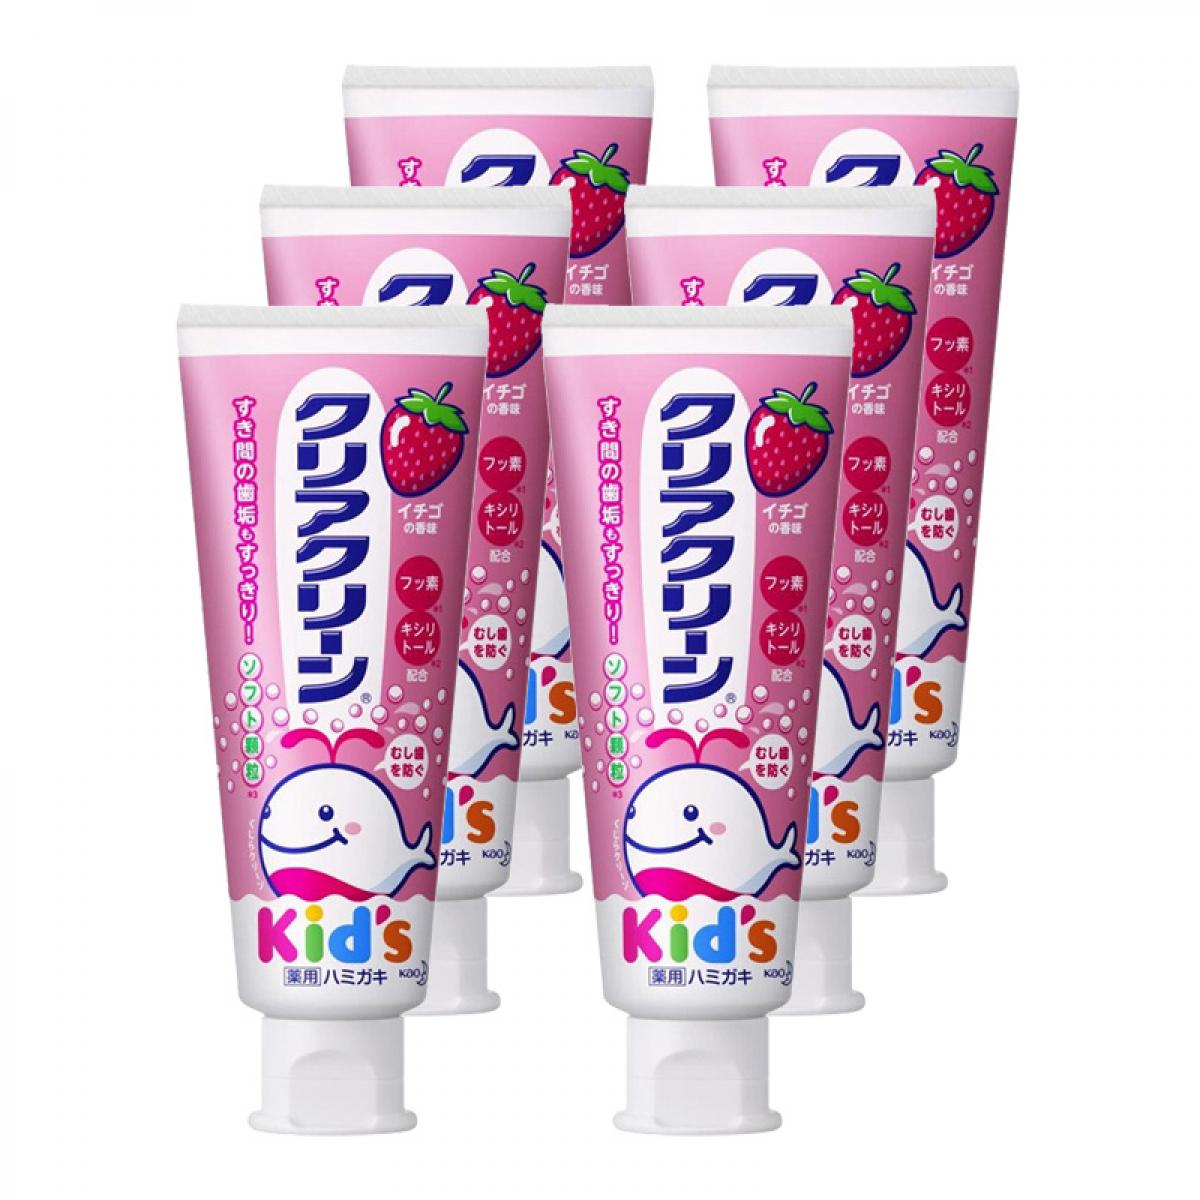 花王防蛀补钙护齿木糖醇儿童牙膏 70g 草莓味*6件